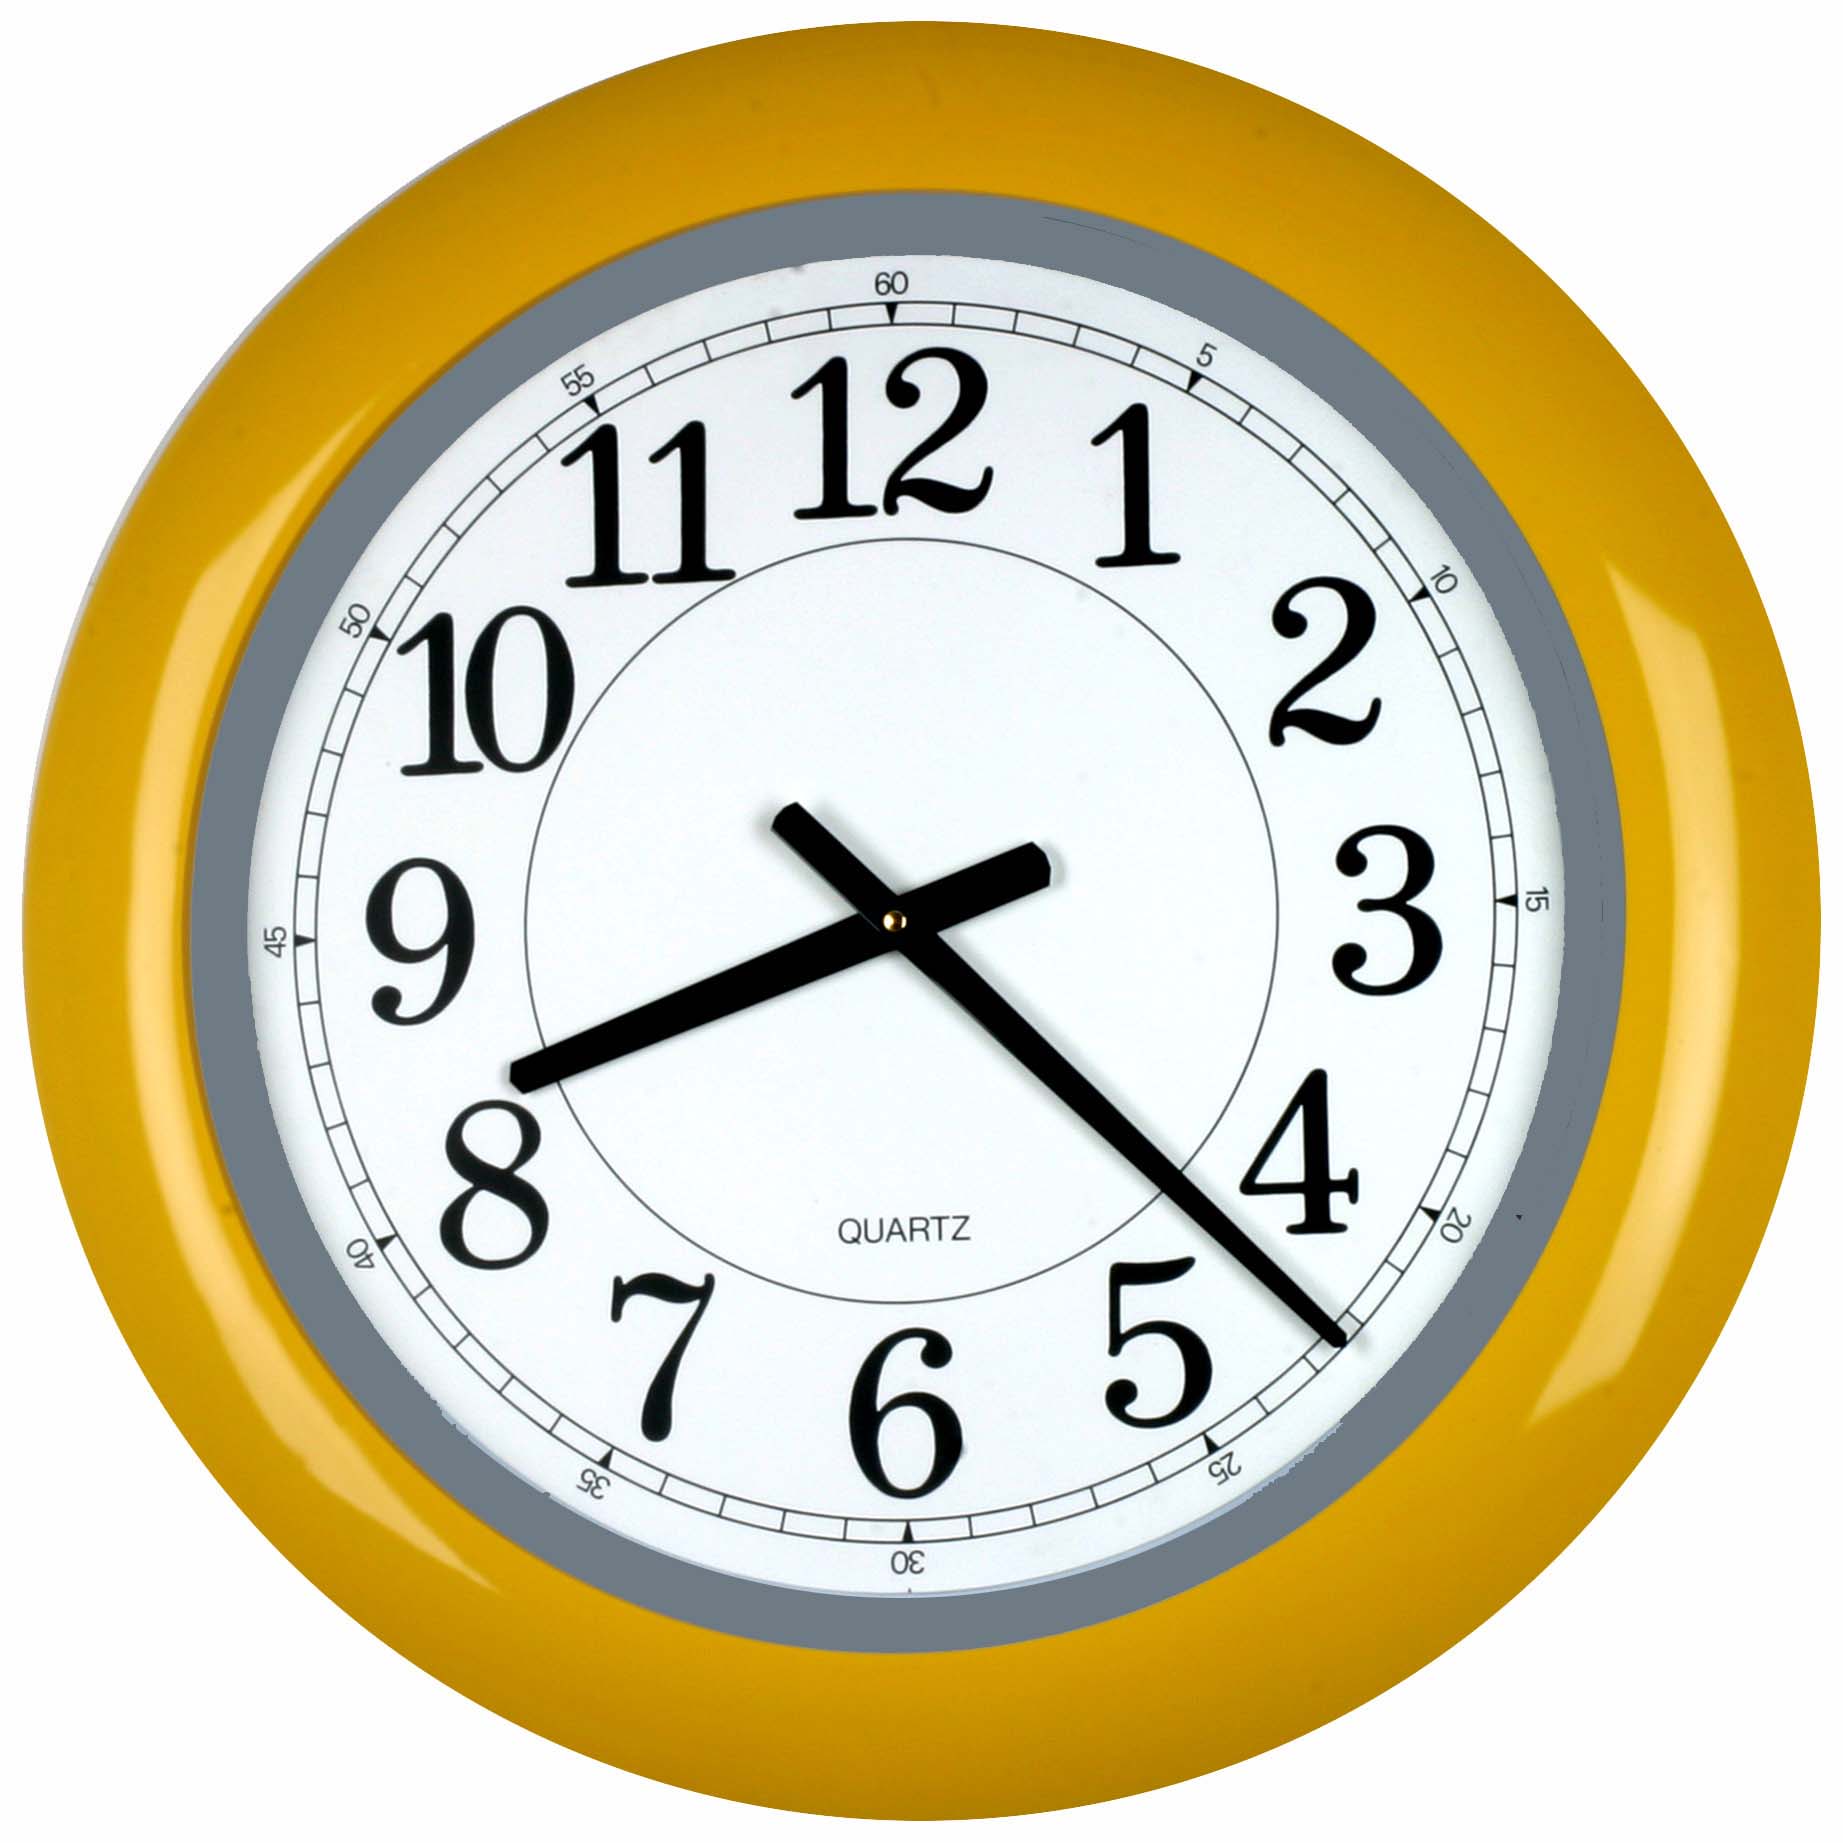 Часы показывающие разное время. Часы. Часы на белом фоне. Часы 8:30. Изображение часов.